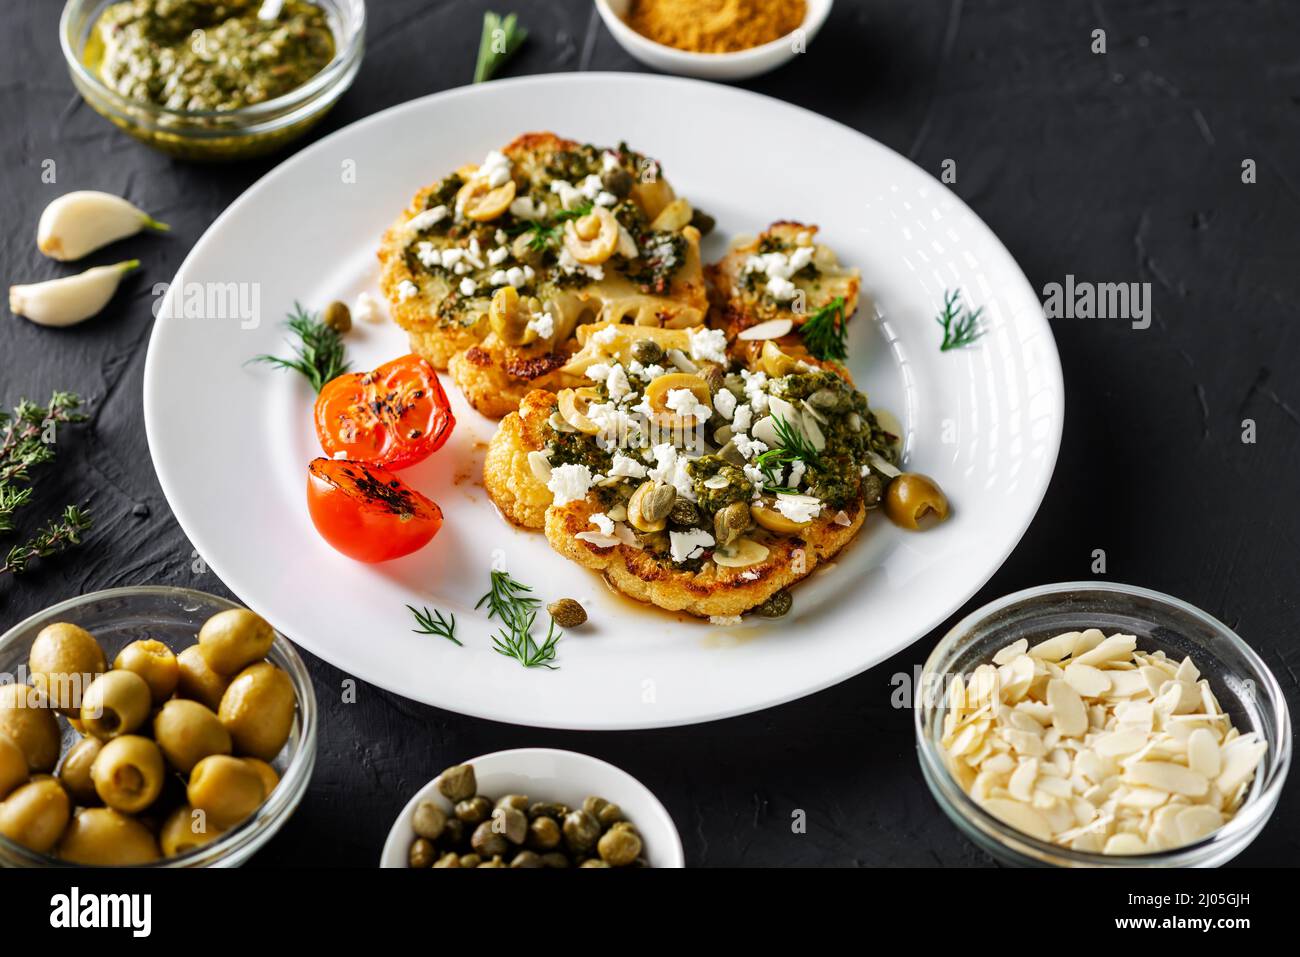 Blumenkohlesteak mit Gewürzen, Chimichurri-Sauce, Mandelflocken, Oliven, gebratenen Kirschtomaten und Kapern auf einem weißen Teller. Dunkler Hintergrund. Stockfoto